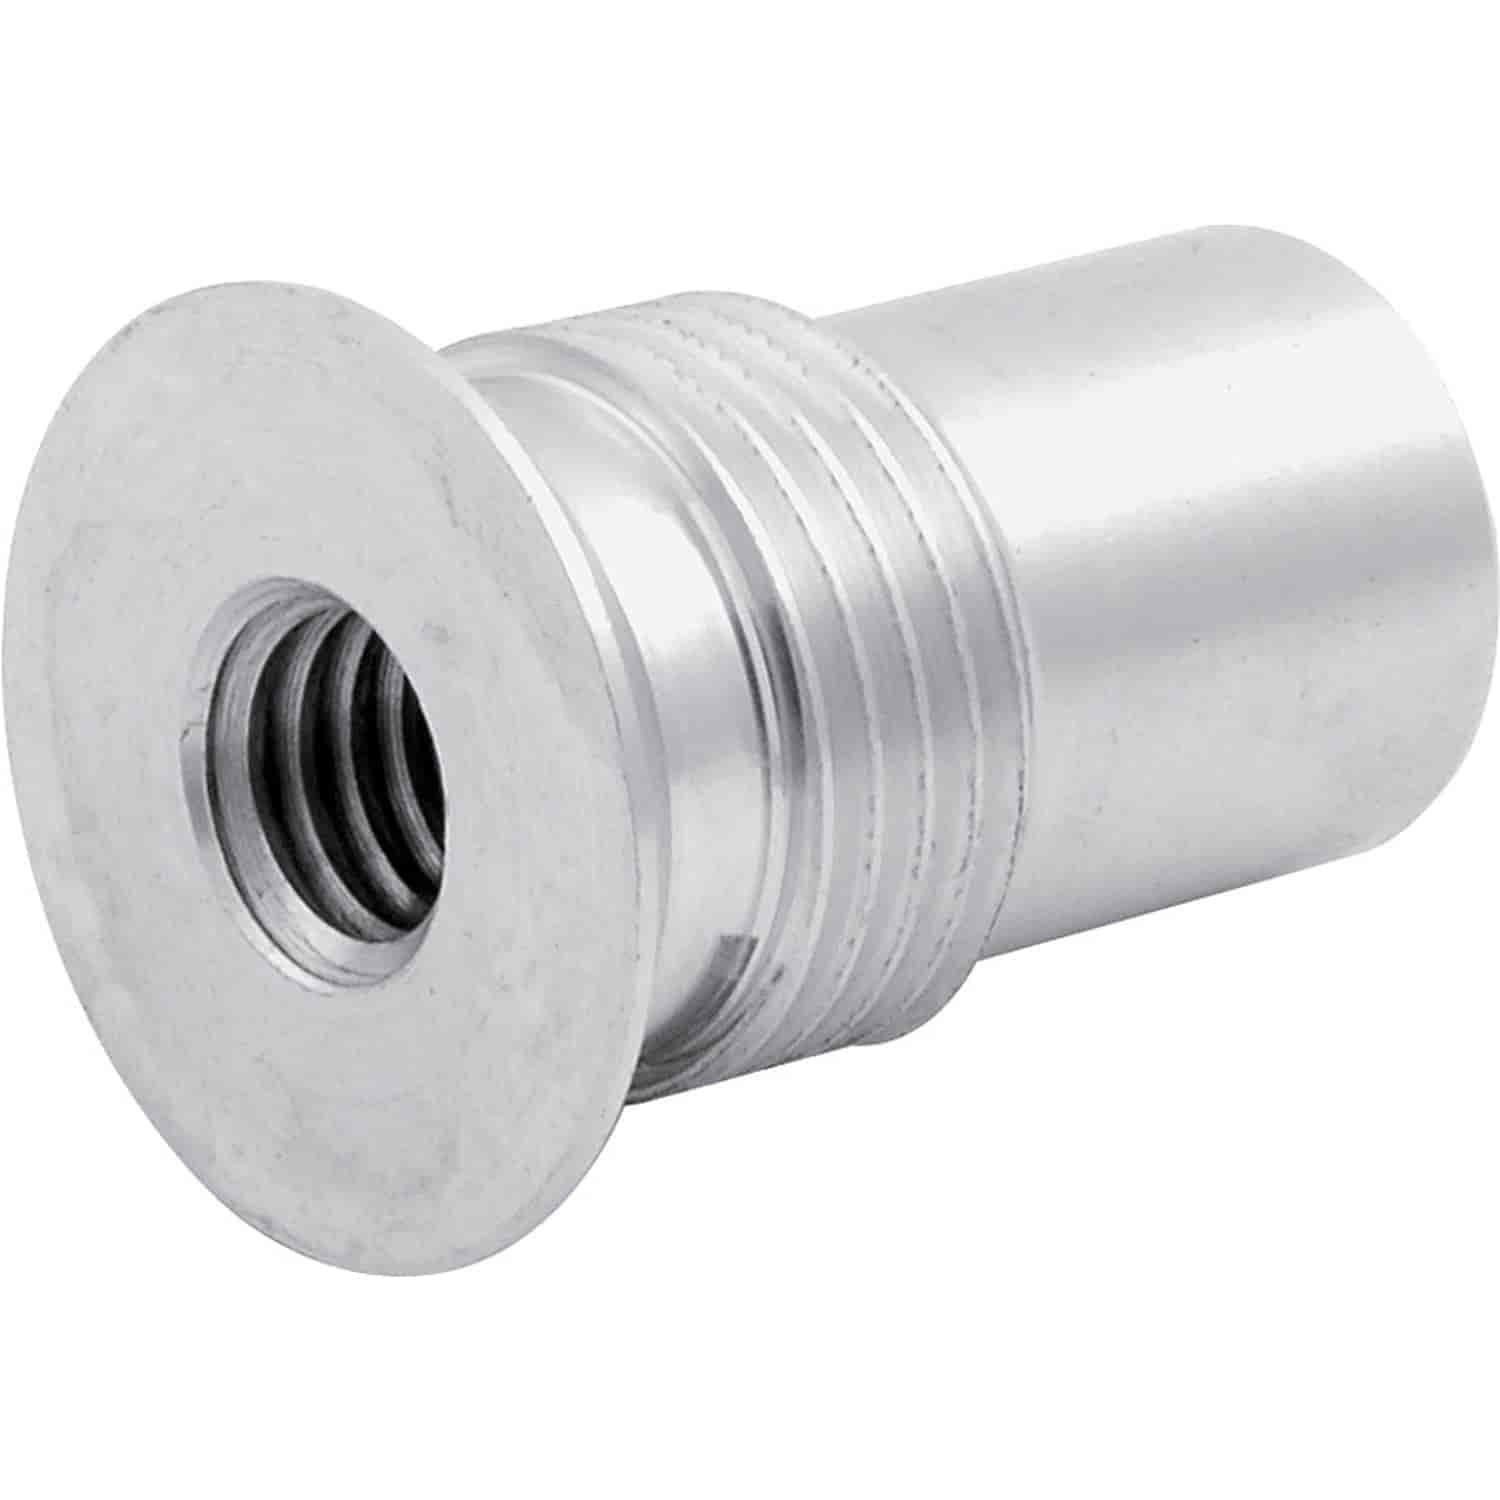 Aluminum Axle Plug 3/8"-24 Internal Thread